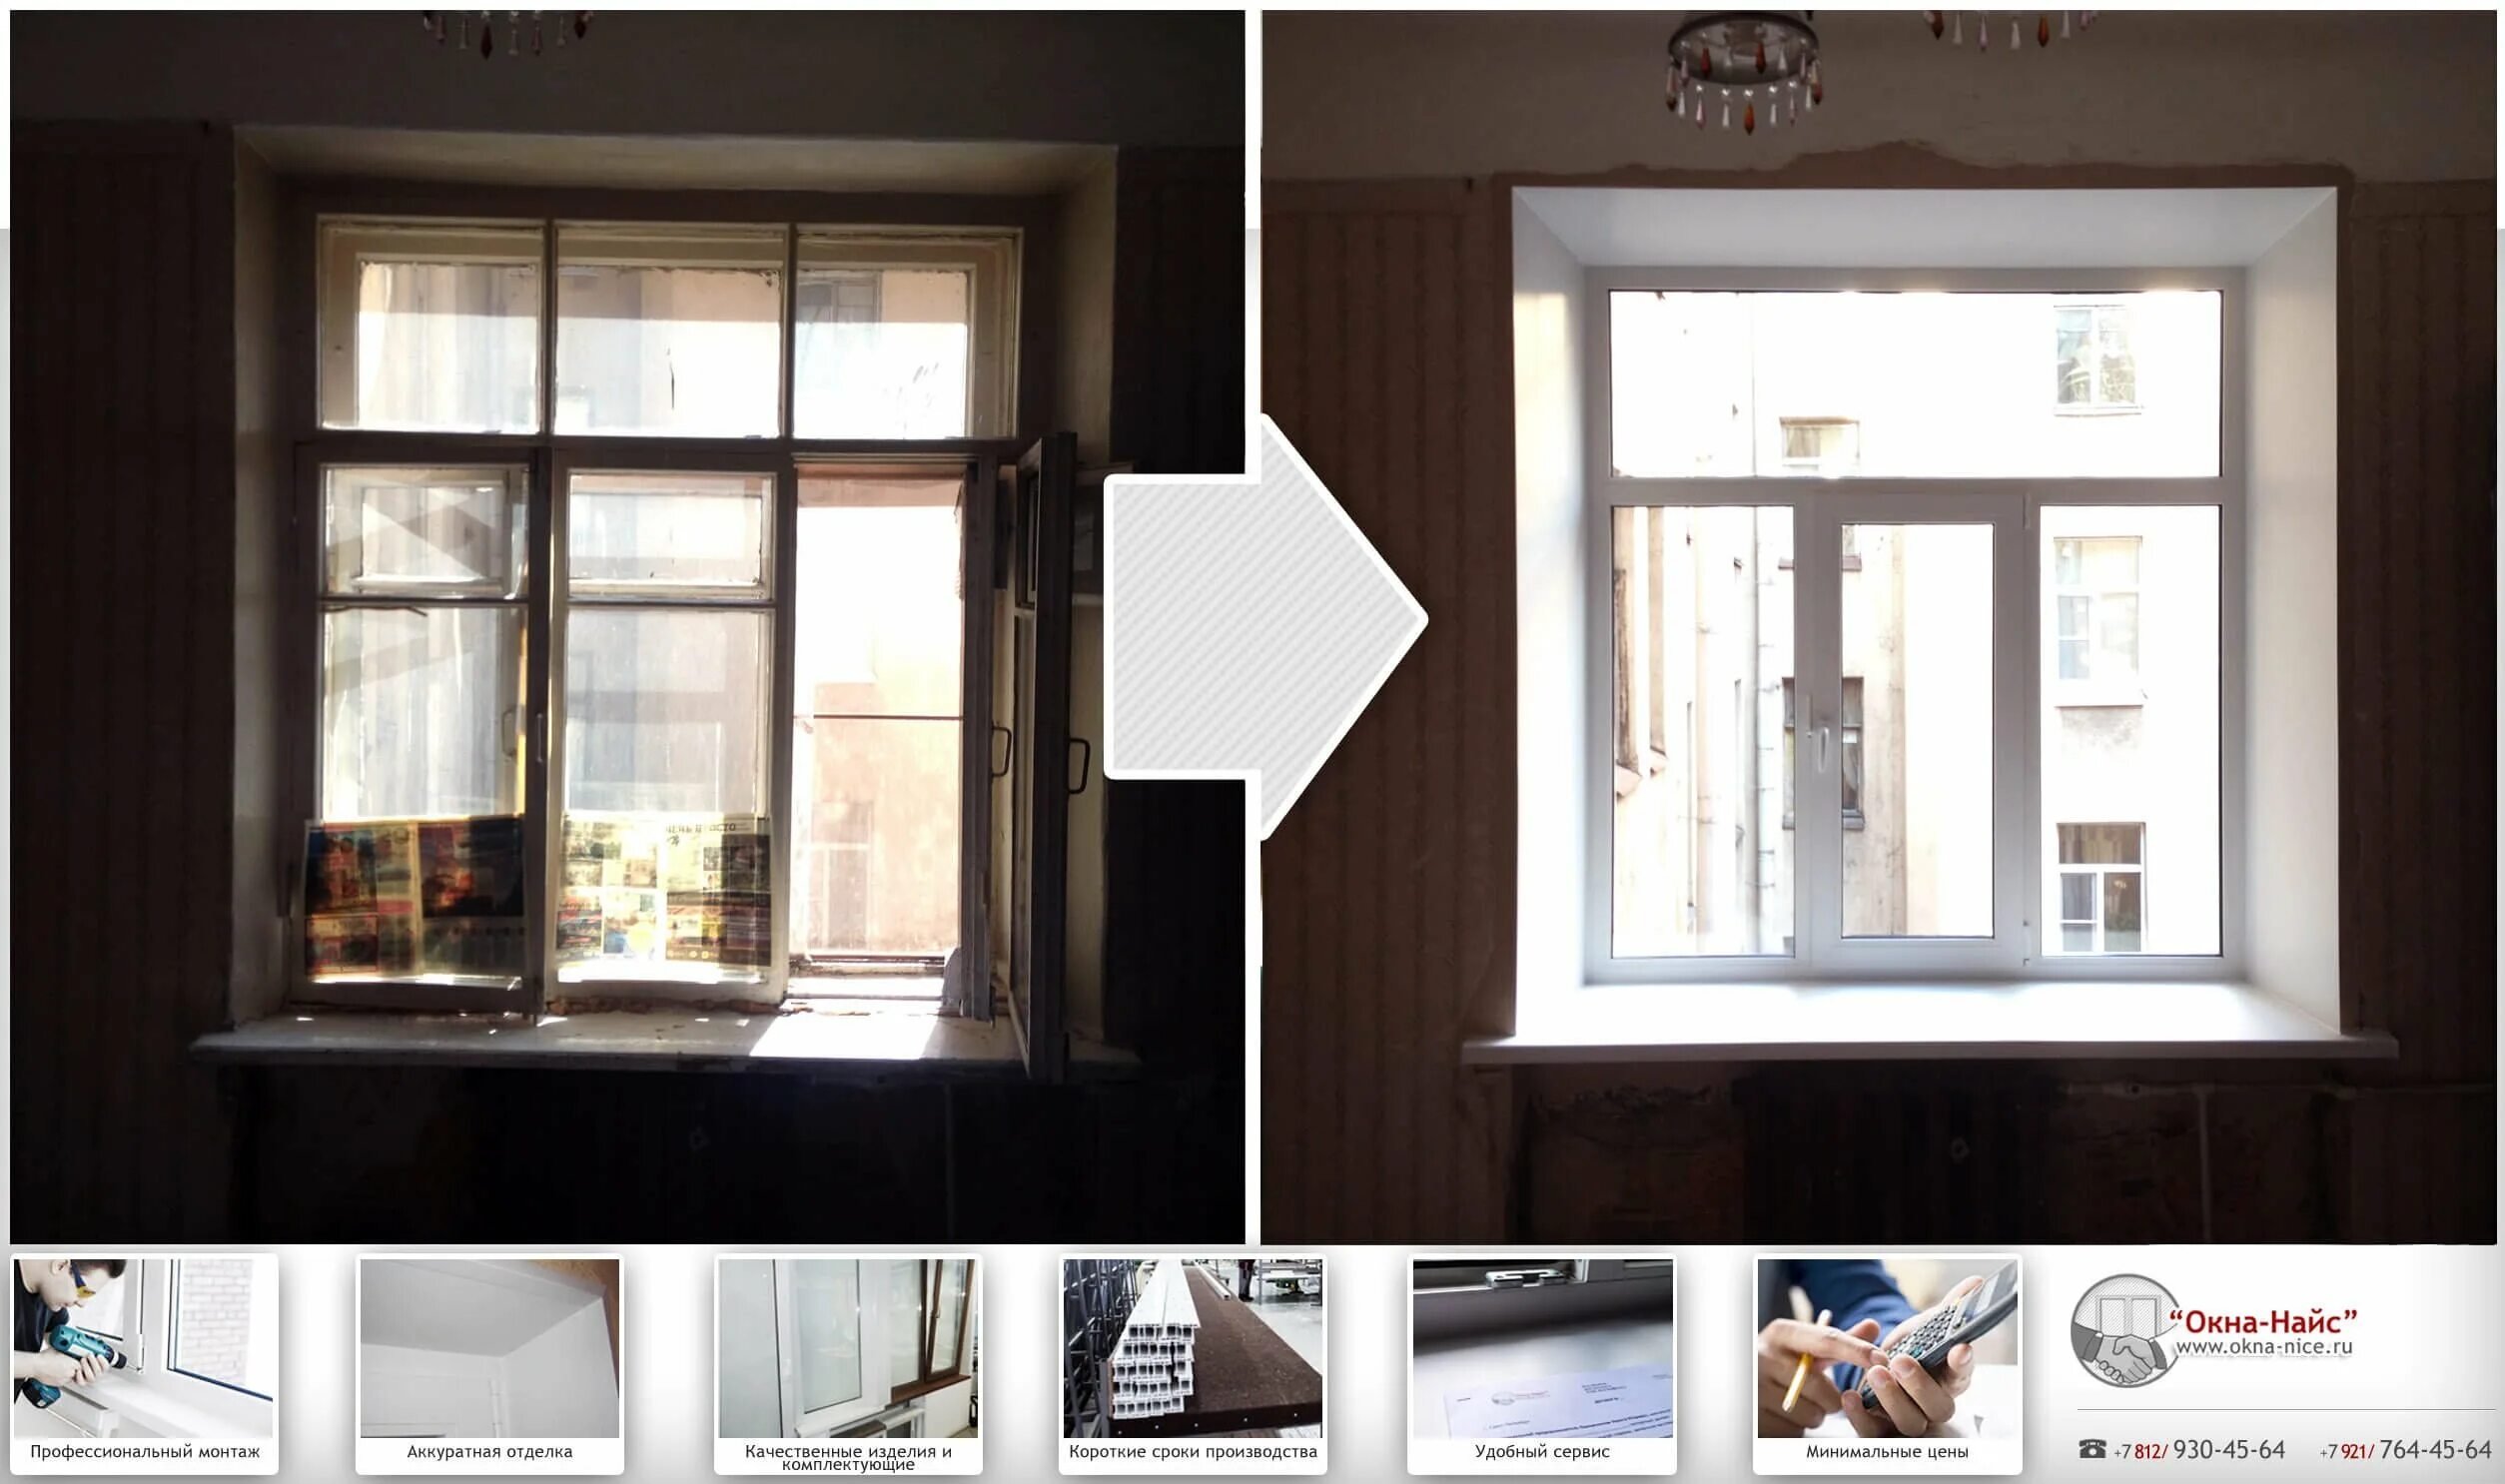 Увеличить окно можно. Пластиковые окна до и после. Старые пластиковые окна. Старое и новое окно. Окна в сталинских домах.